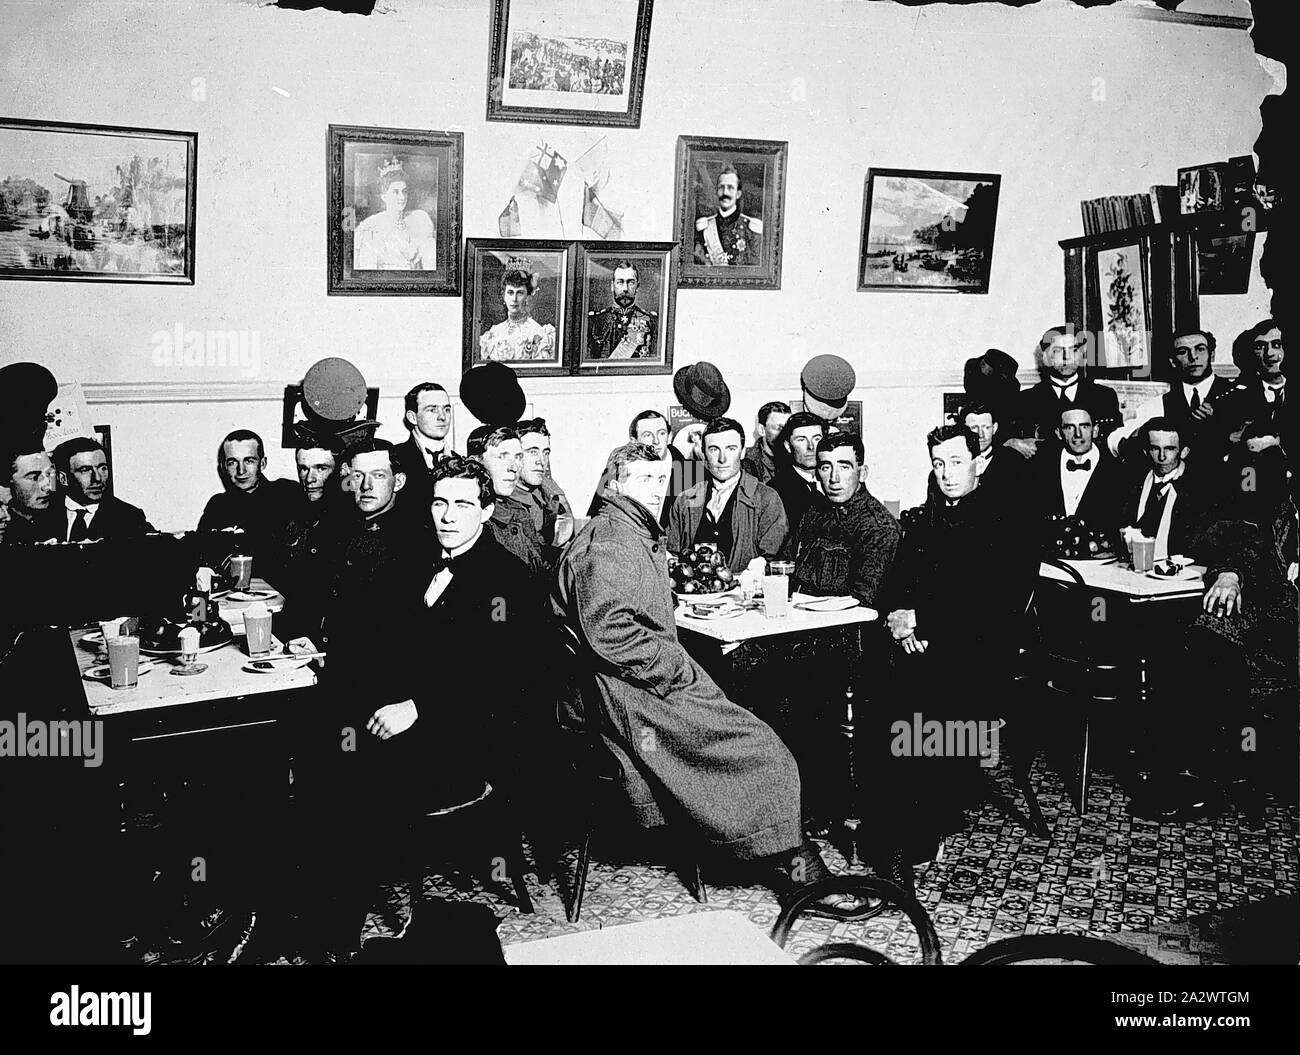 Negativo - Russo's Cafe, Bairnsdale, Victoria, circa 1920, la raccolta degli uomini in Russo's Cafe, Bairnsdale, intorno al 1920. Il numero di uomini in uniforme militare suggerisce che esso può essere un raduno di veterani di guerra mondiale I Foto Stock